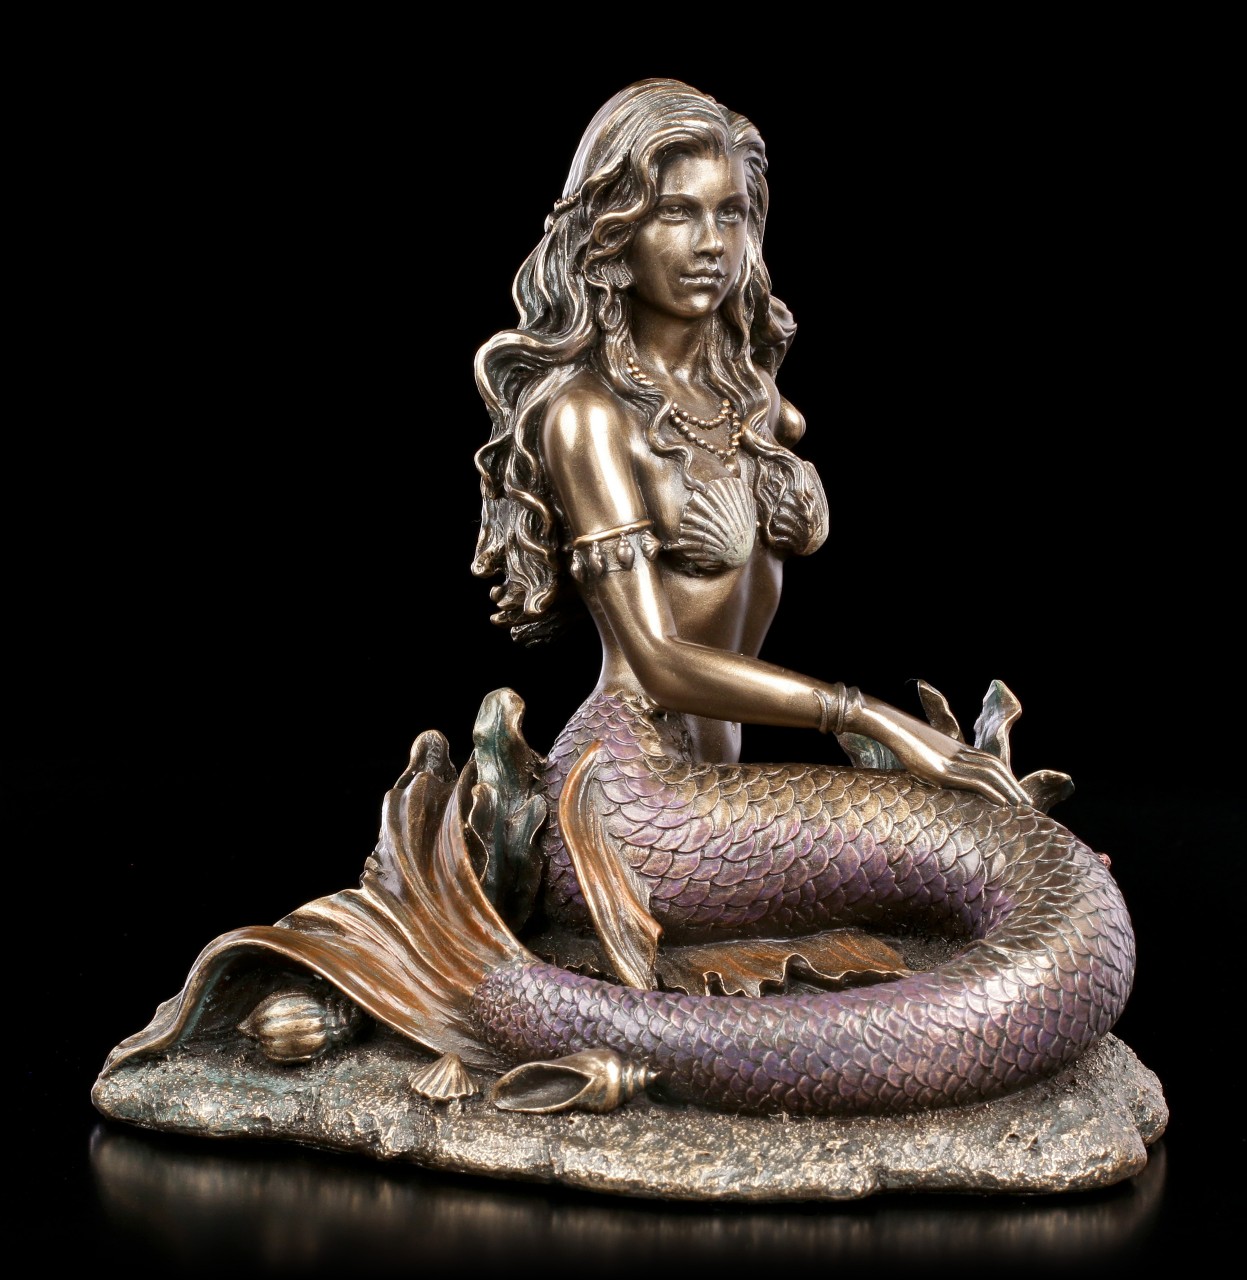 Mermaid Figurine on Seabed - bronzed